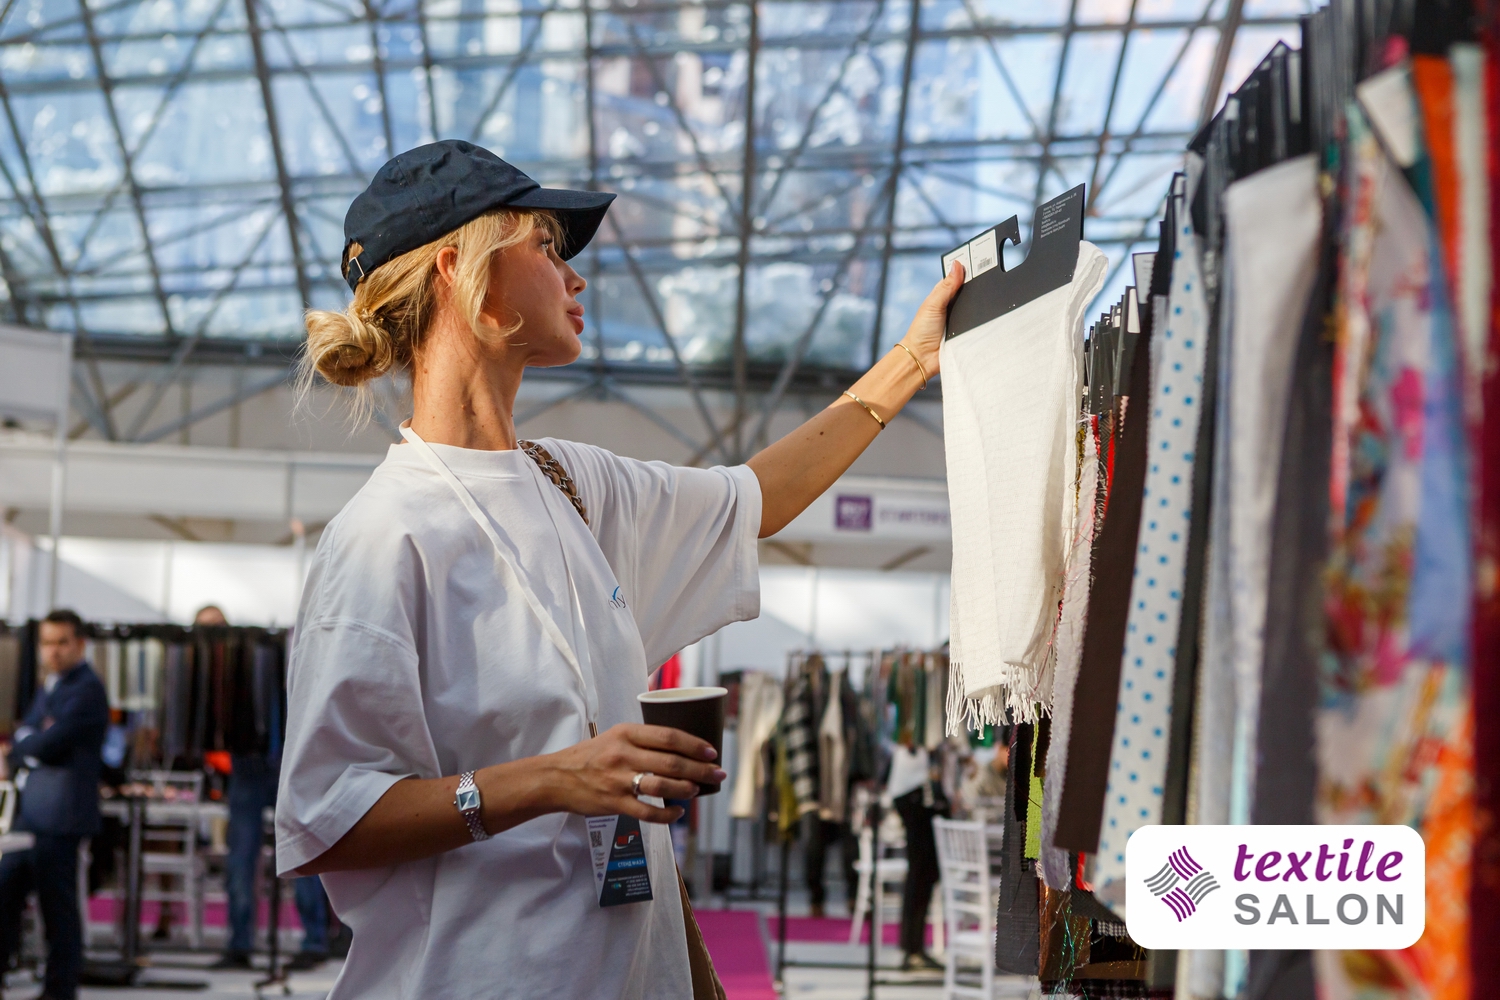 29 августа – 1 сентября на выставке Textile Salon в Москва-Сити соберутся более 200 фабрик из 10 стран, чтобы продемонстрировать новые коллекции качественных тканей и фурнитуры для производства одежды.